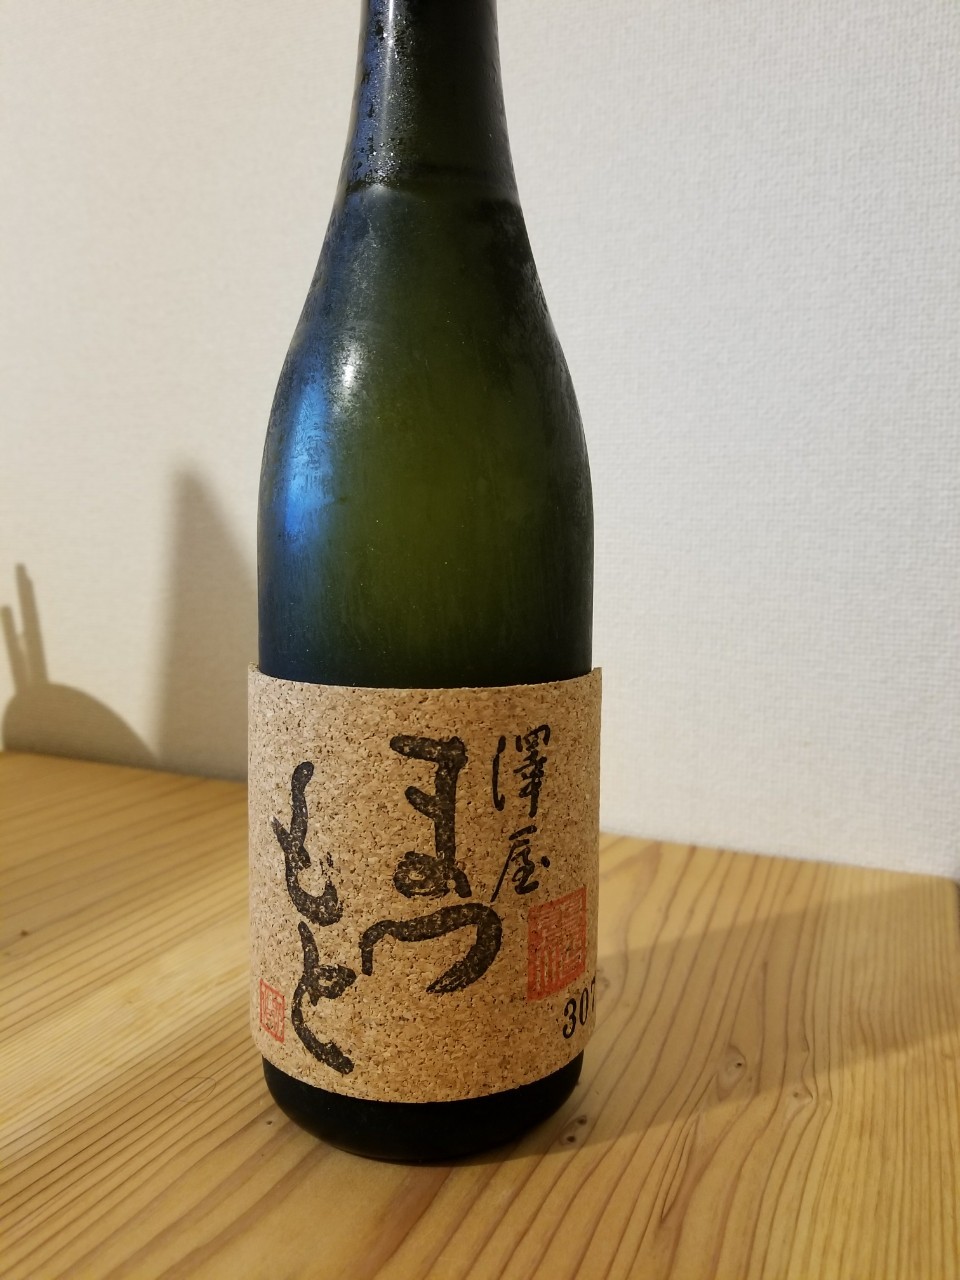 【773】澤屋まつもと 純米大吟醸 Ultra 雫 2015 | 日本酒感想日誌